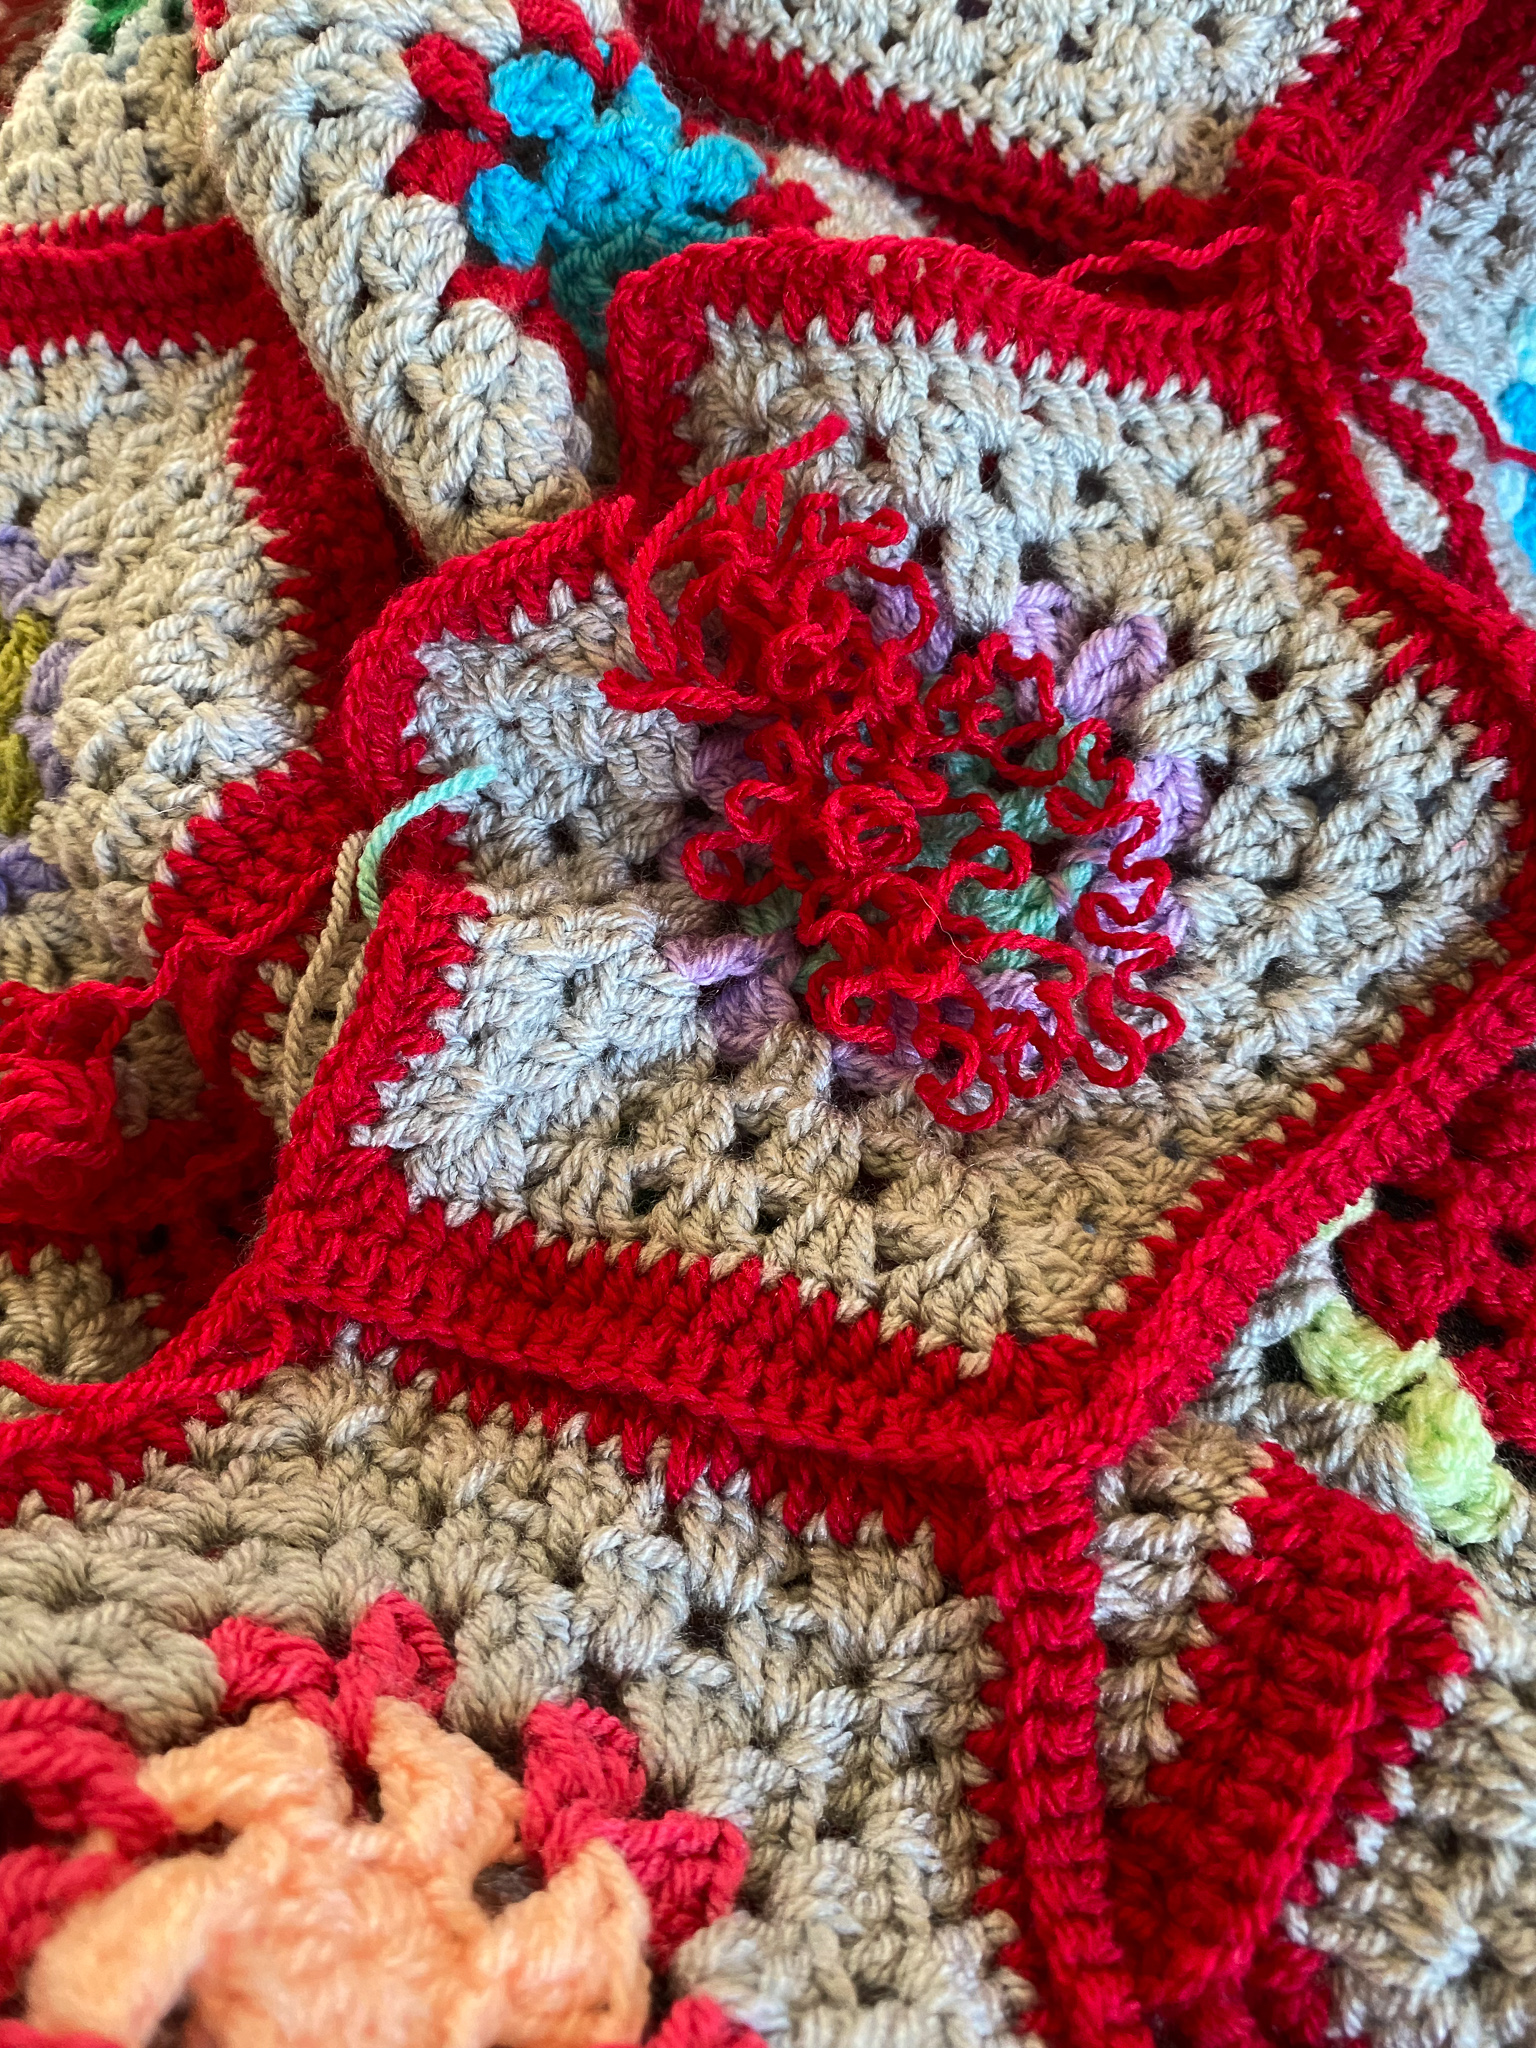 Cotton Yarn, YarnArt JEANS TROPICAL, Gradient Yarn, Knitting Yarn, Crochet, Multicolor  Yarn, soft yarn, Baby Yarns